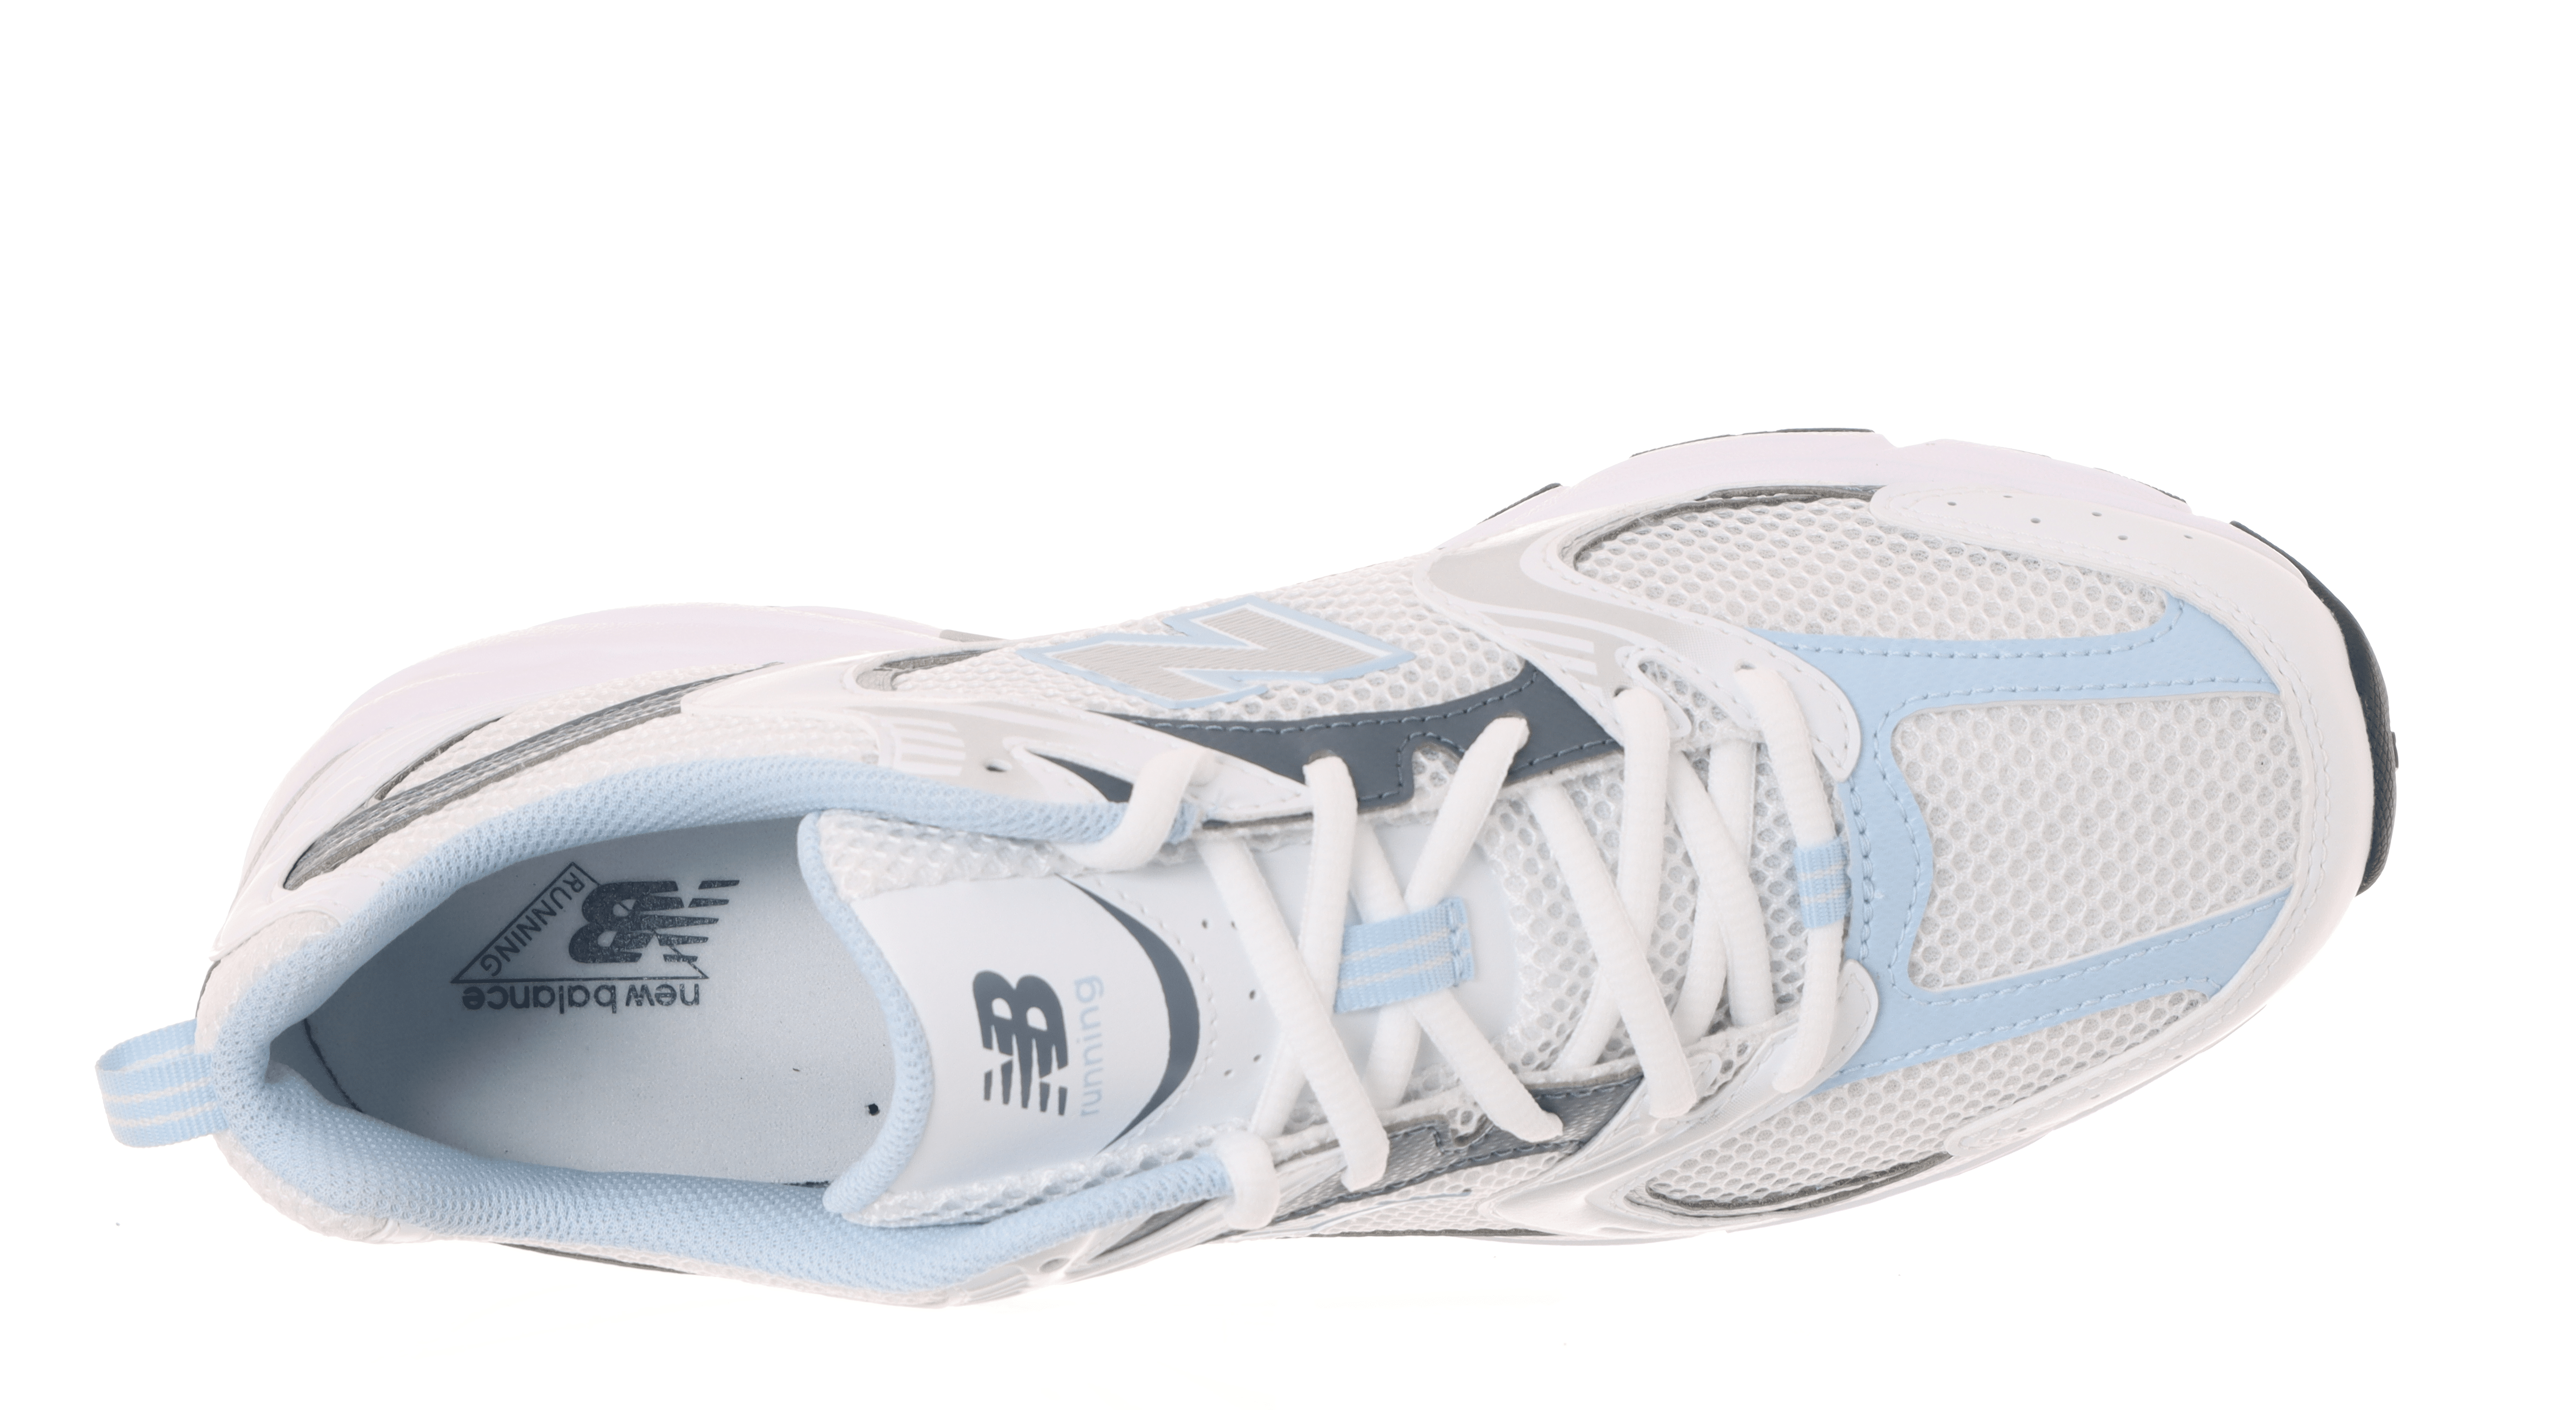 NEW BALANCE - Sneakers MR530RA - Bianco Azzurro Scarpe Donna NEW BALANCE - Collezione Donna 